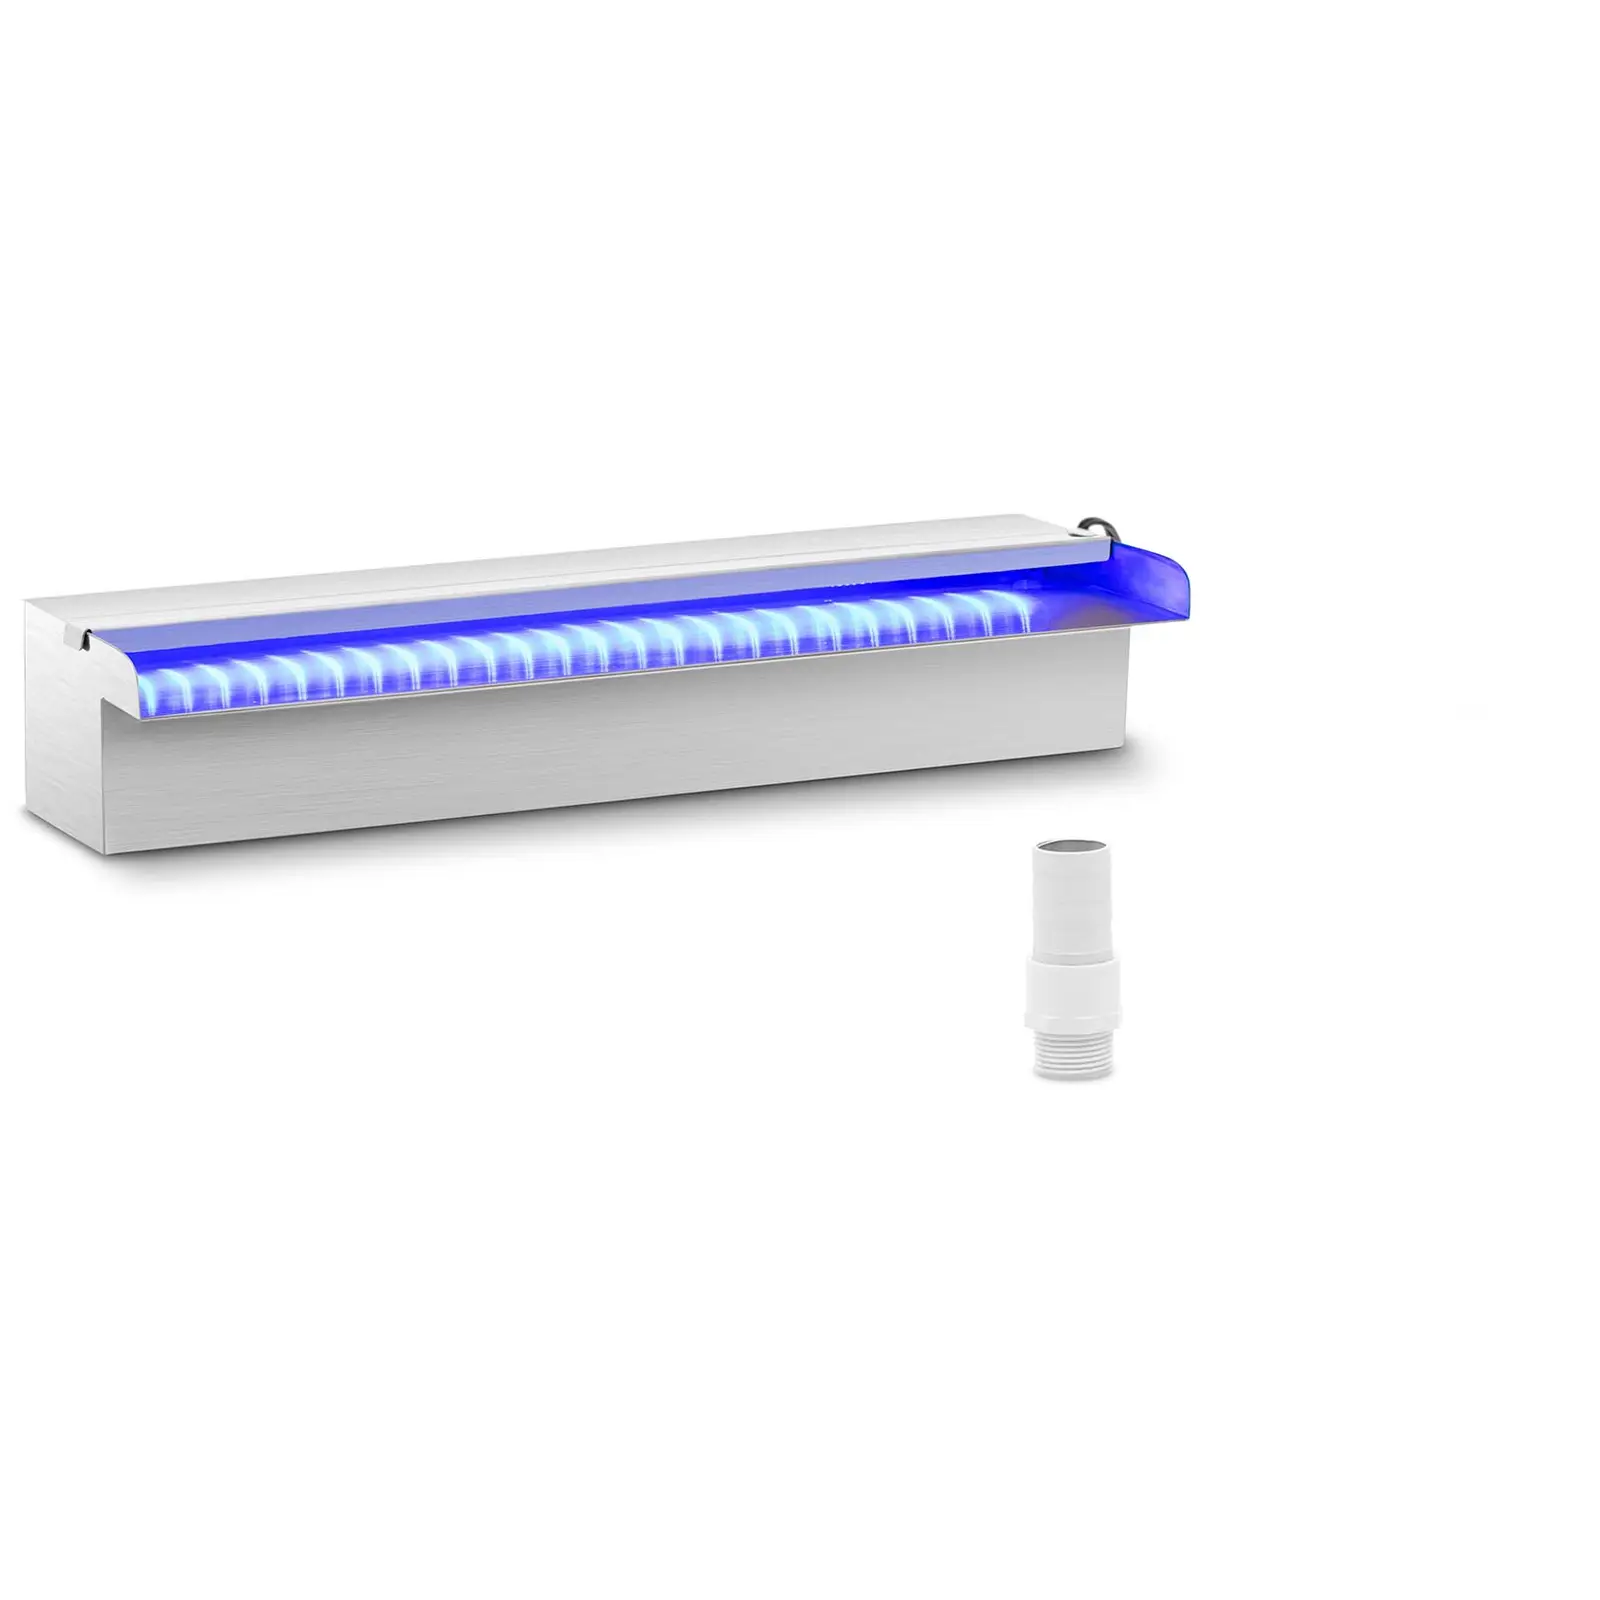 {{marketing_meta_keyword_1}} – 45 cm – LED osvetlenie – modrá/biela – otvorený výtok vody